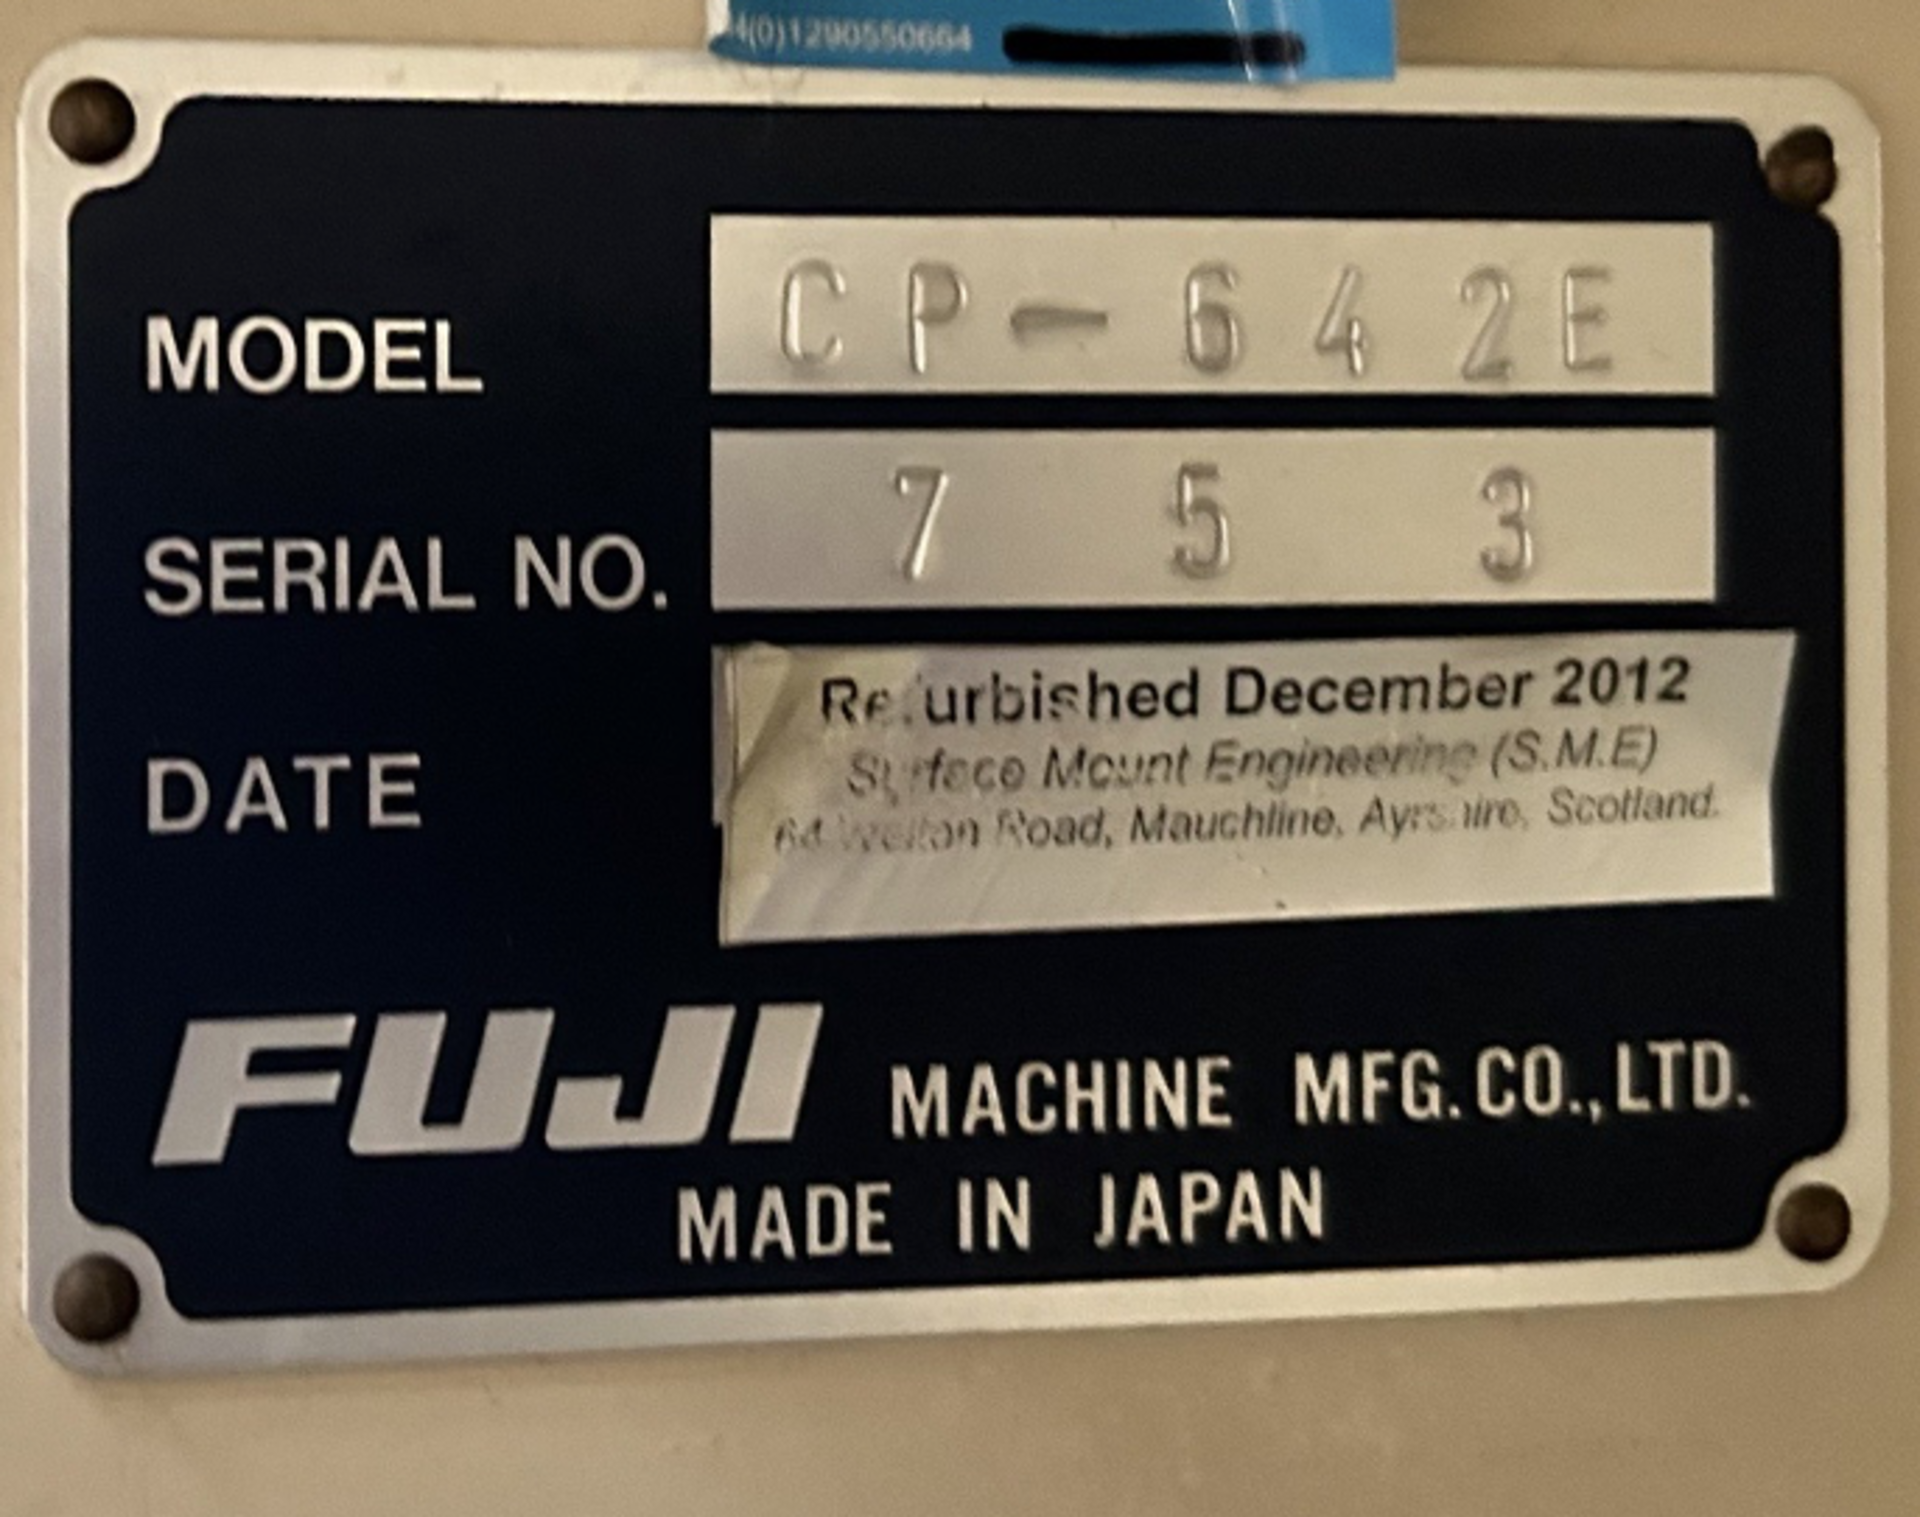 NO RESERVE - FUJI, CP-642E - Serial No. 753 (1998) Refurbished Dec 2012. - Image 2 of 3